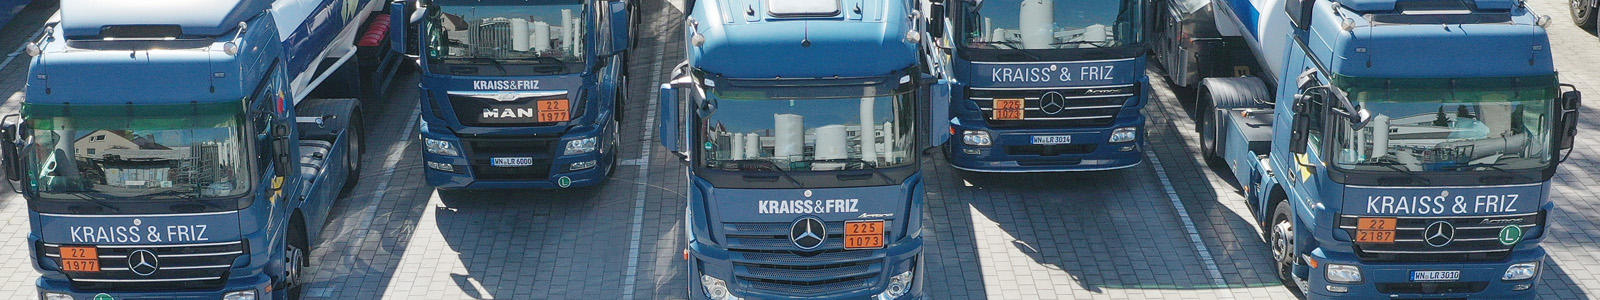 Bilder KRAISS & FRIZ Gase und Technik GmbH & Co. KG